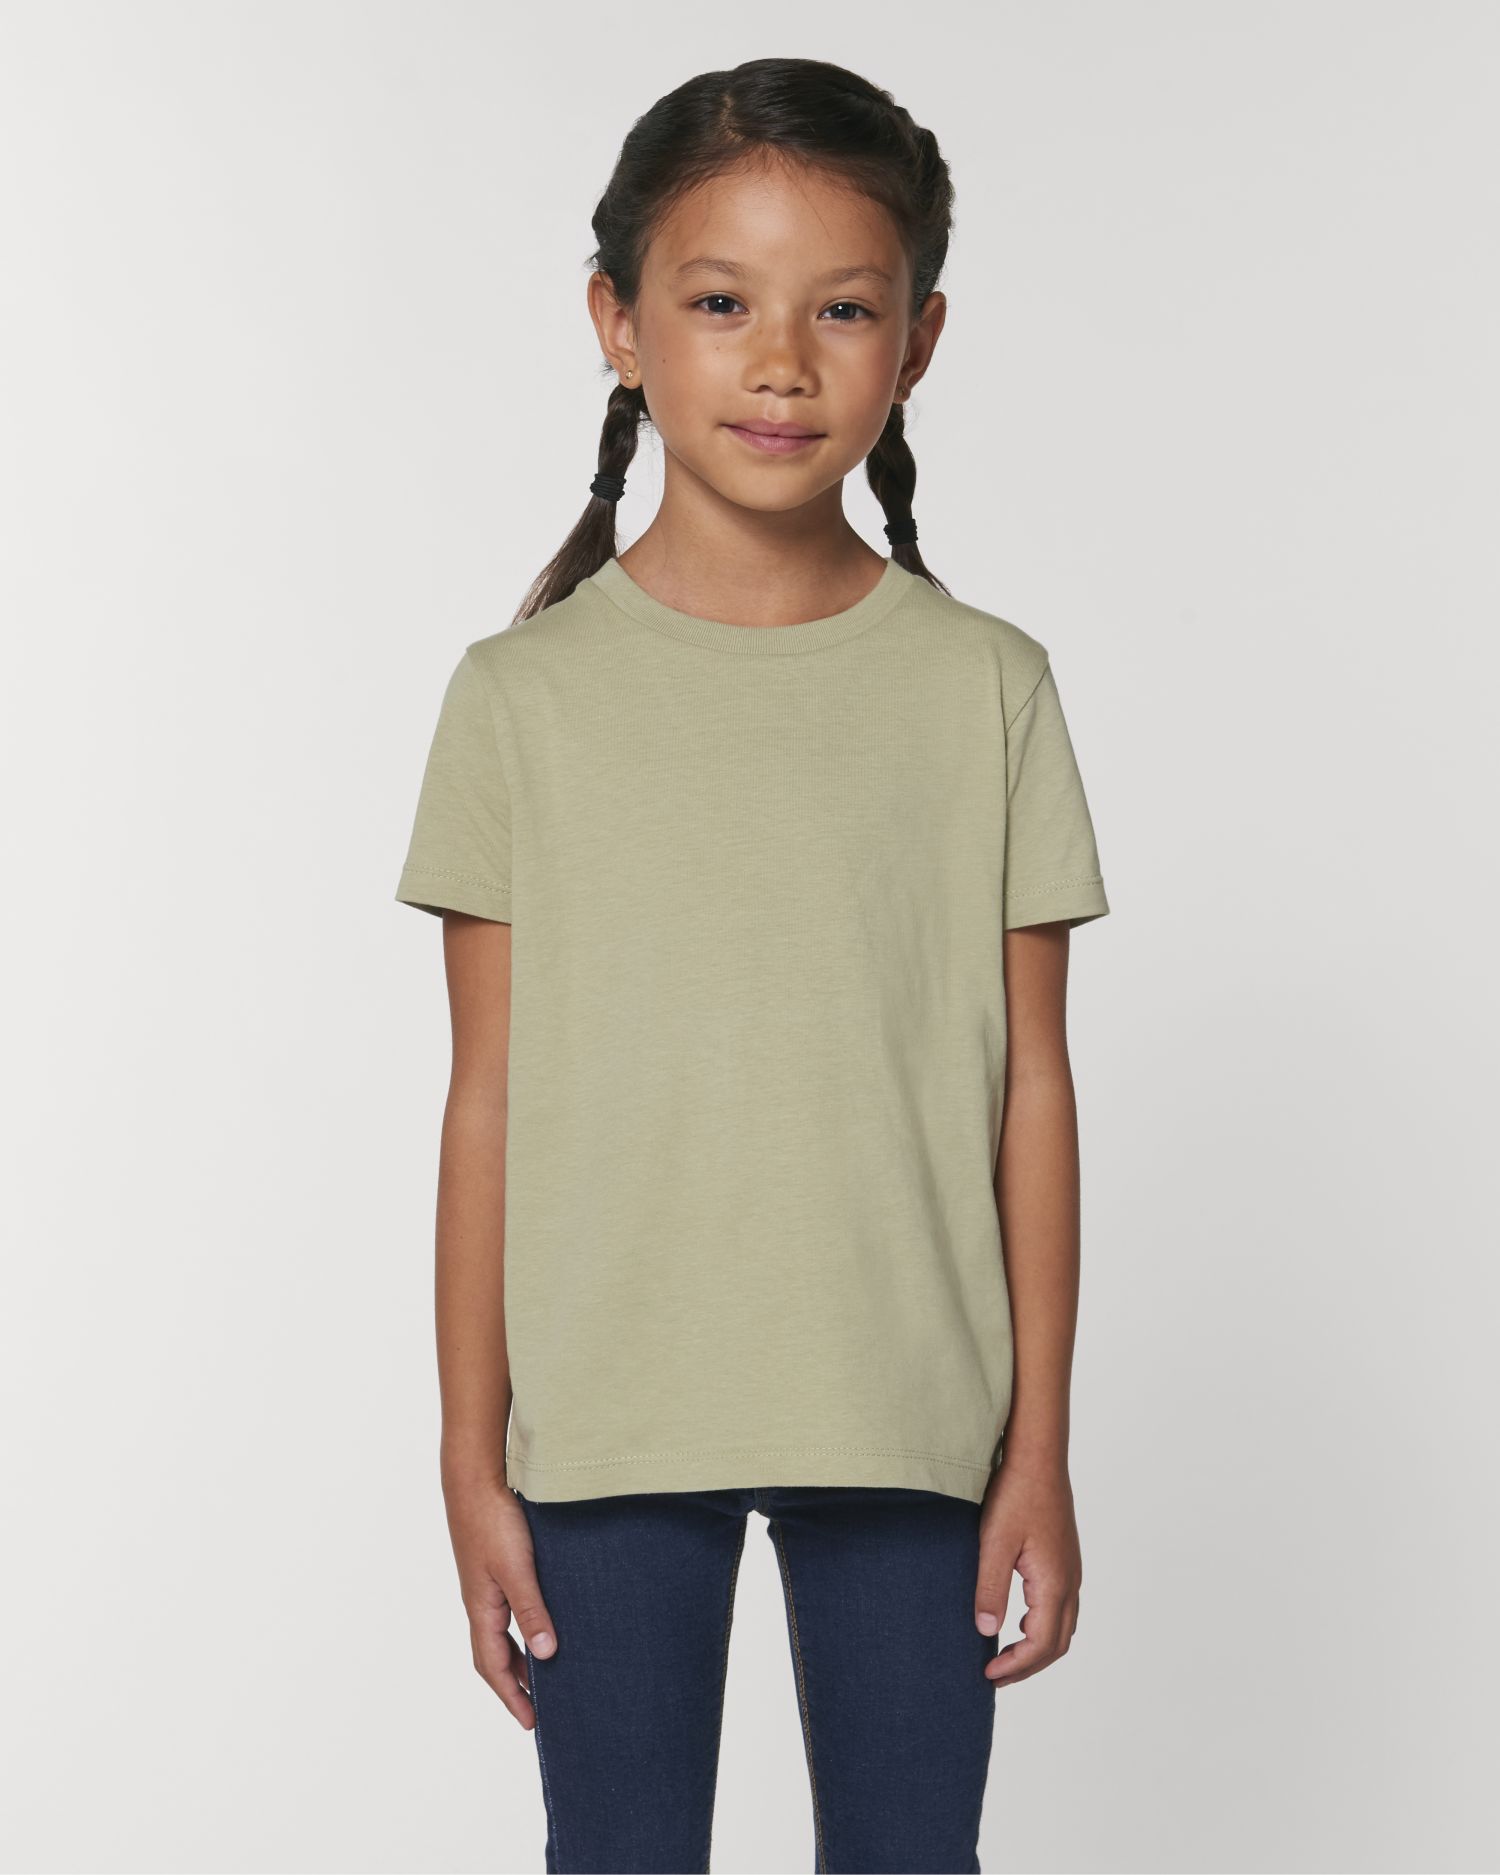 Kids T-Shirt Mini Creator in Farbe Sage